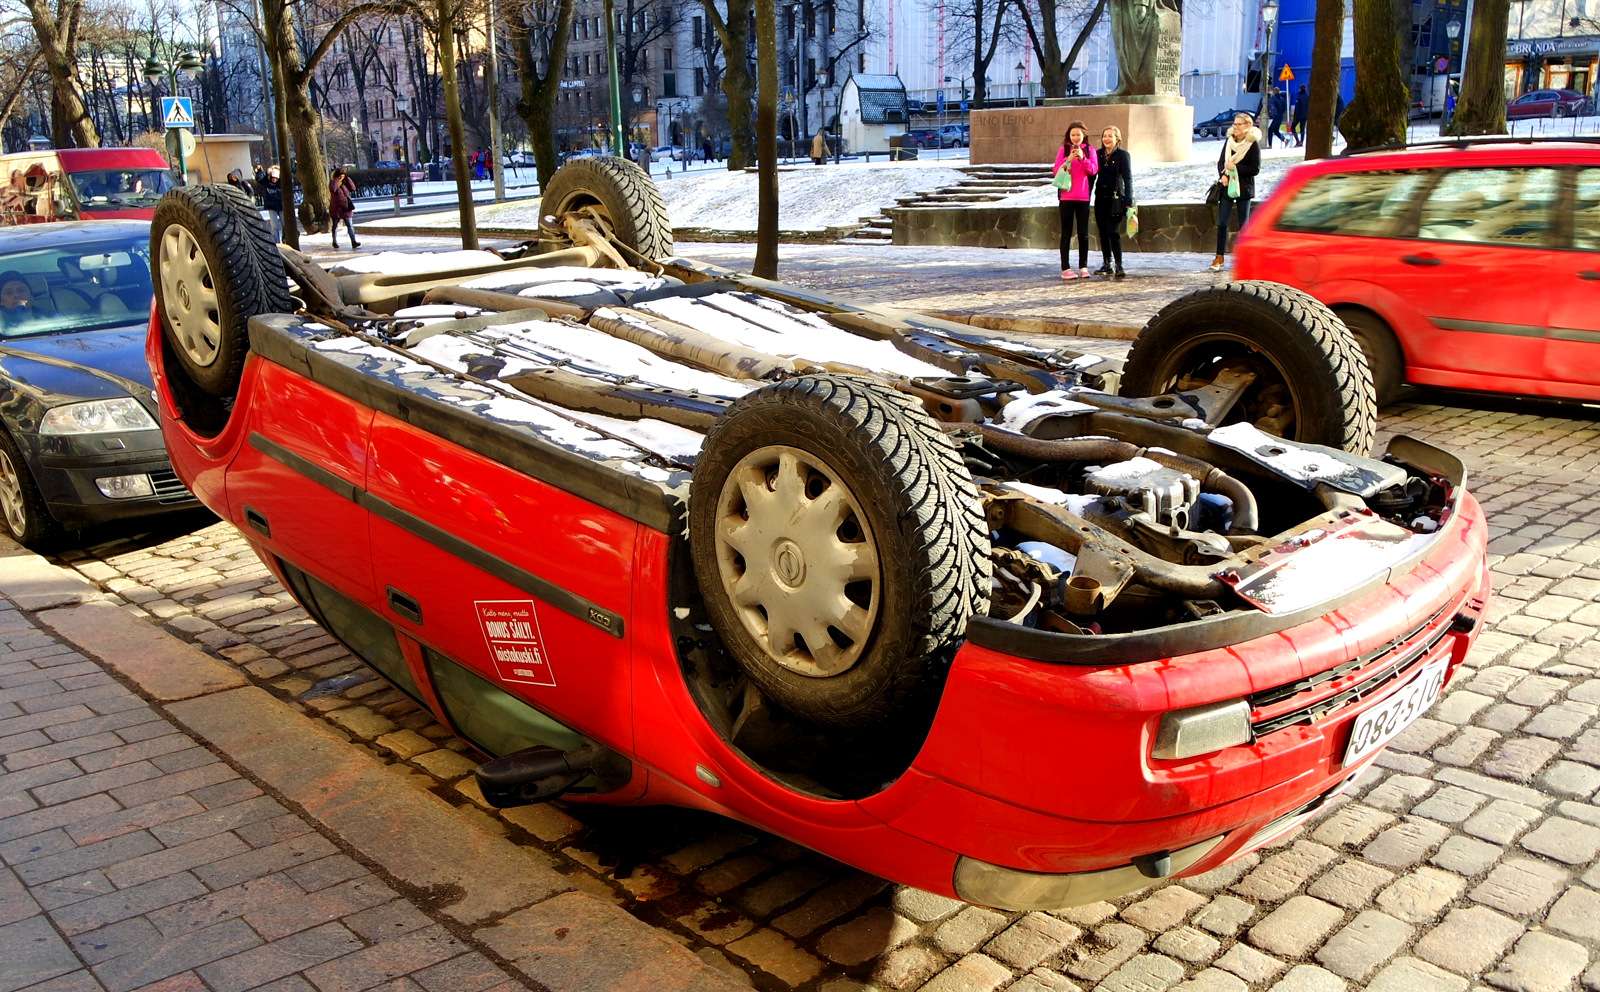 Neobvyklá reklama na auto (Helsinki) skládačky online